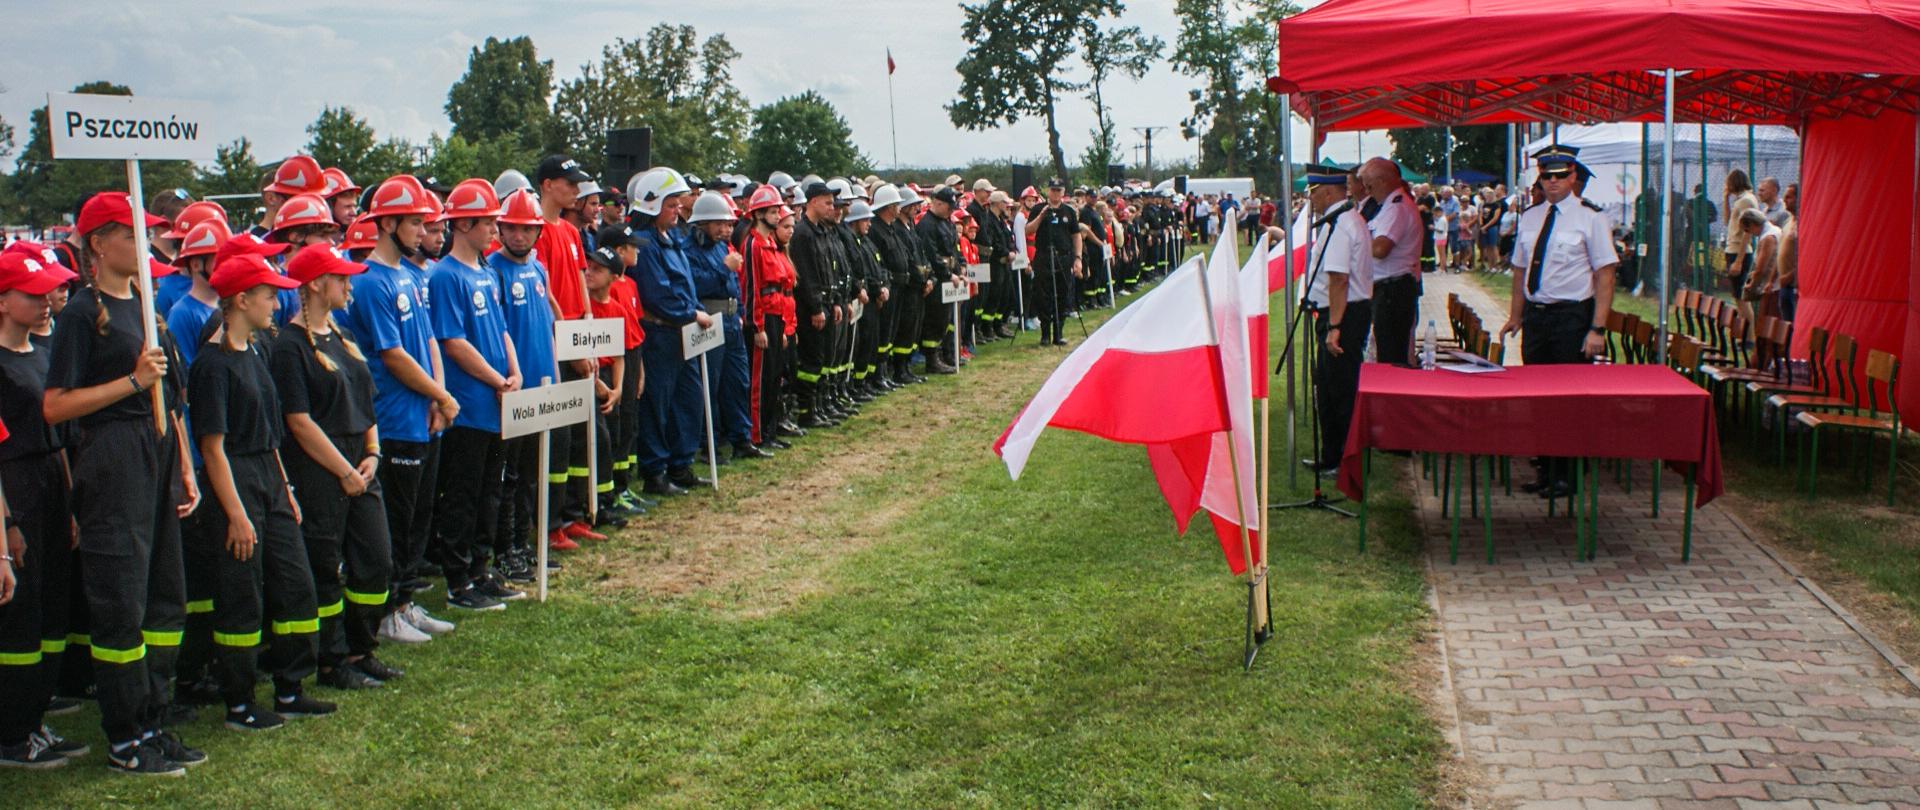 Na zdjęciu ustawione na boisku, w szeregu drużyny startujące w zawodach oraz zaproszeni goście. Tło stanowią biało-czerwone flagi i namiot koloru czerwonego.